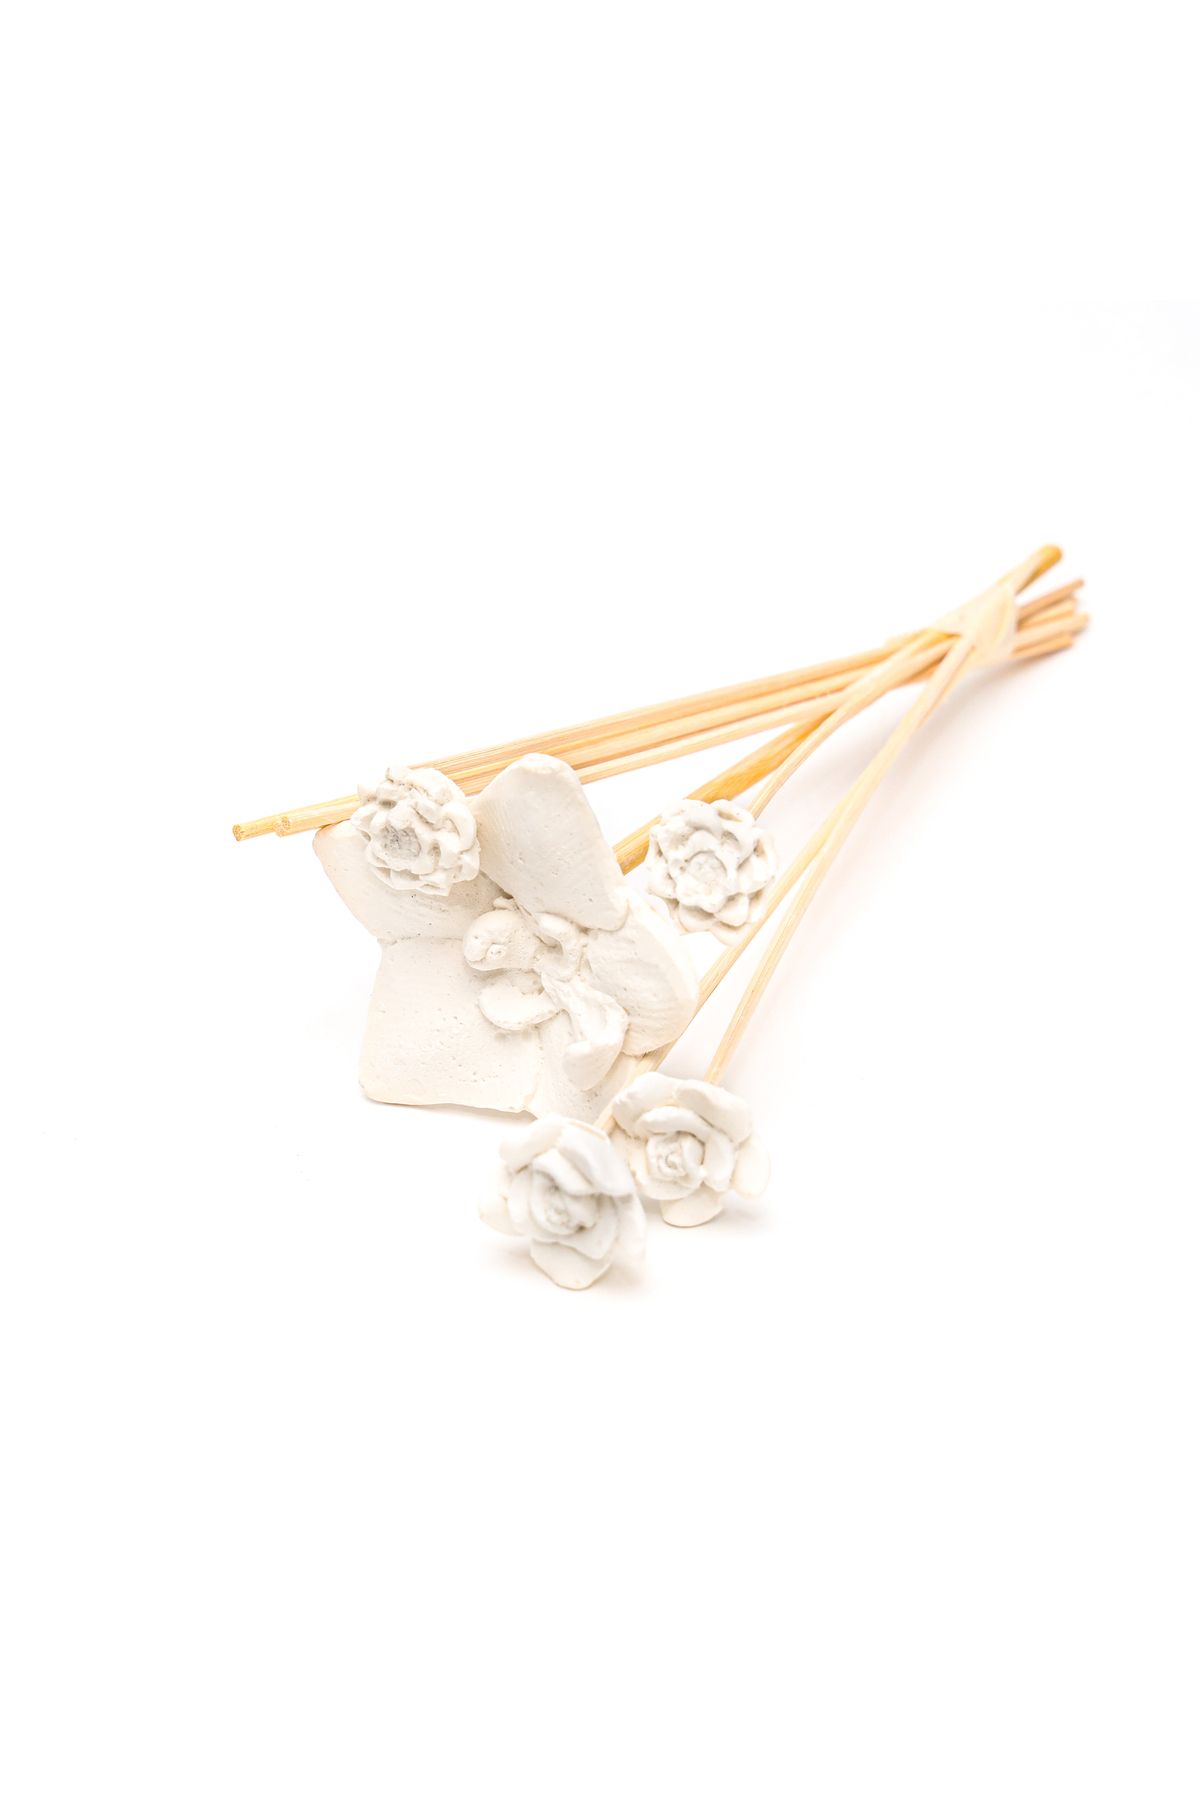 Missi Beyaz Karışık Çiçek Taşlı 10'lu Doğal Bambu Kamış Seti